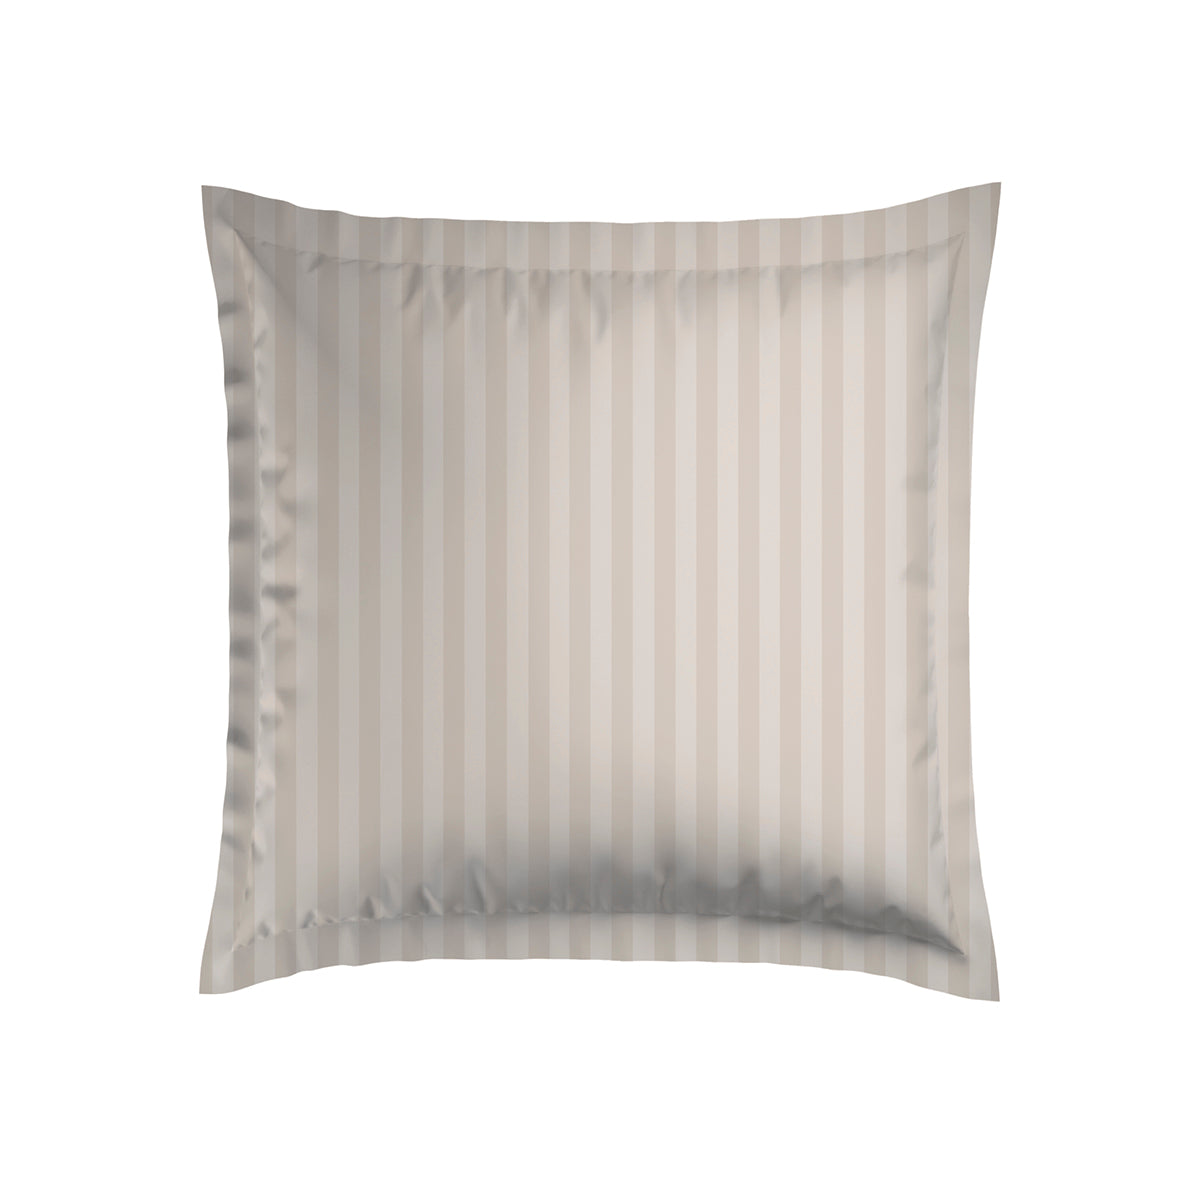 Set of 2 cotton satin pillowcases - Jacquard woven stripe - Taupe